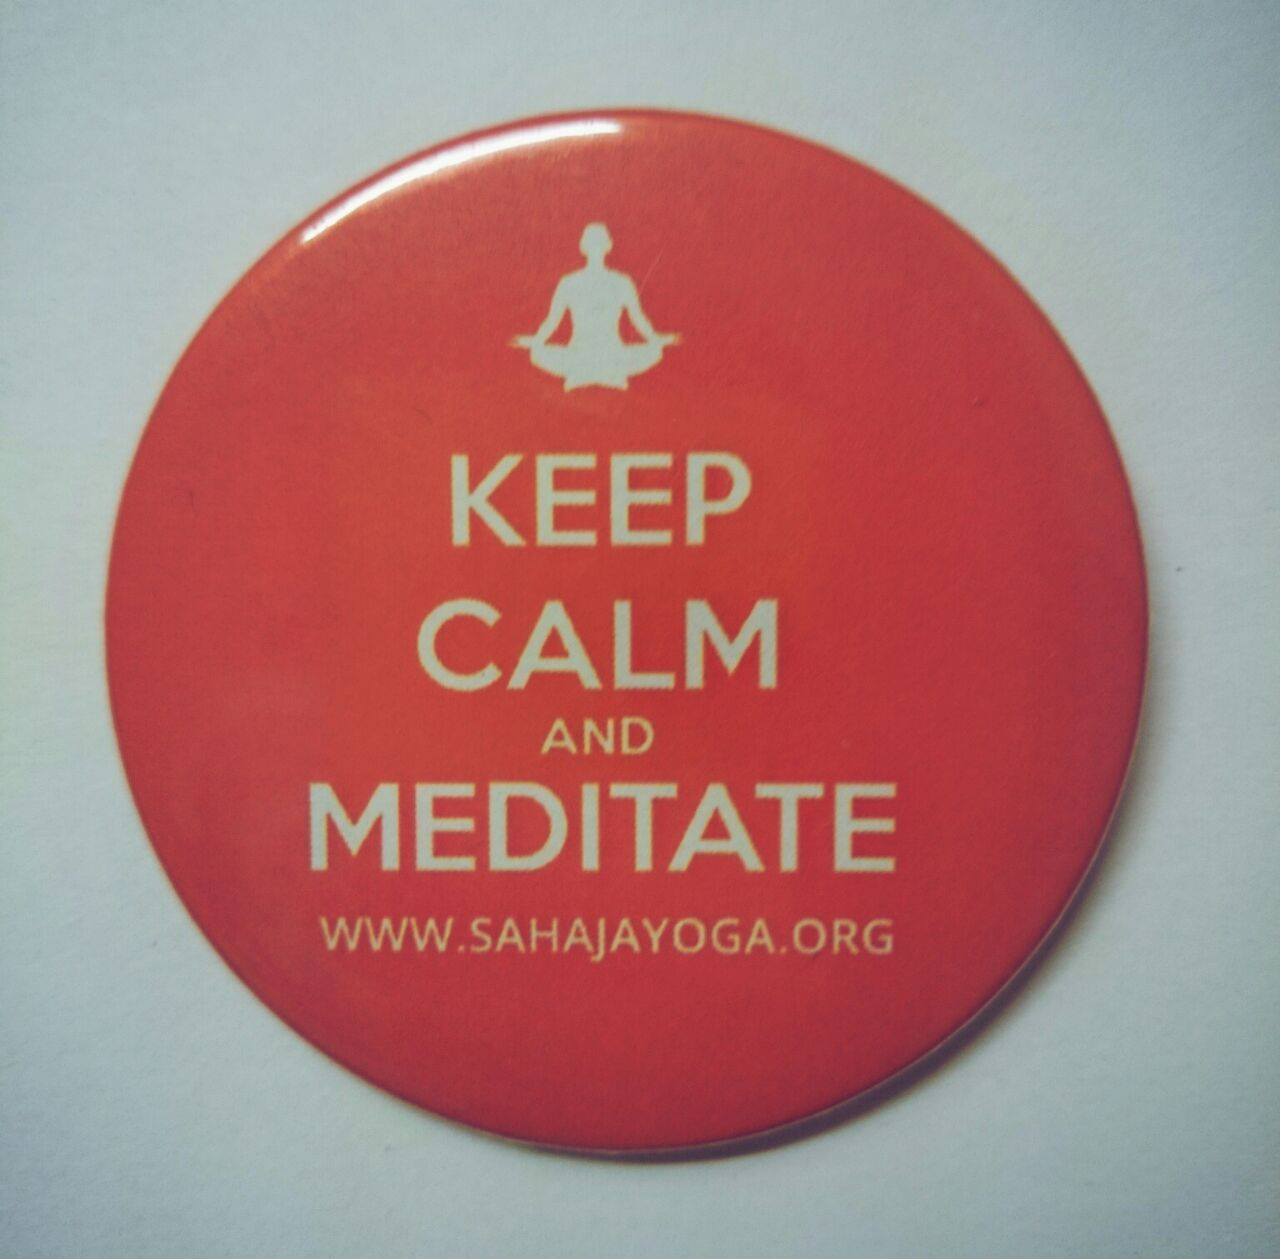 Medita i estigues tranquil